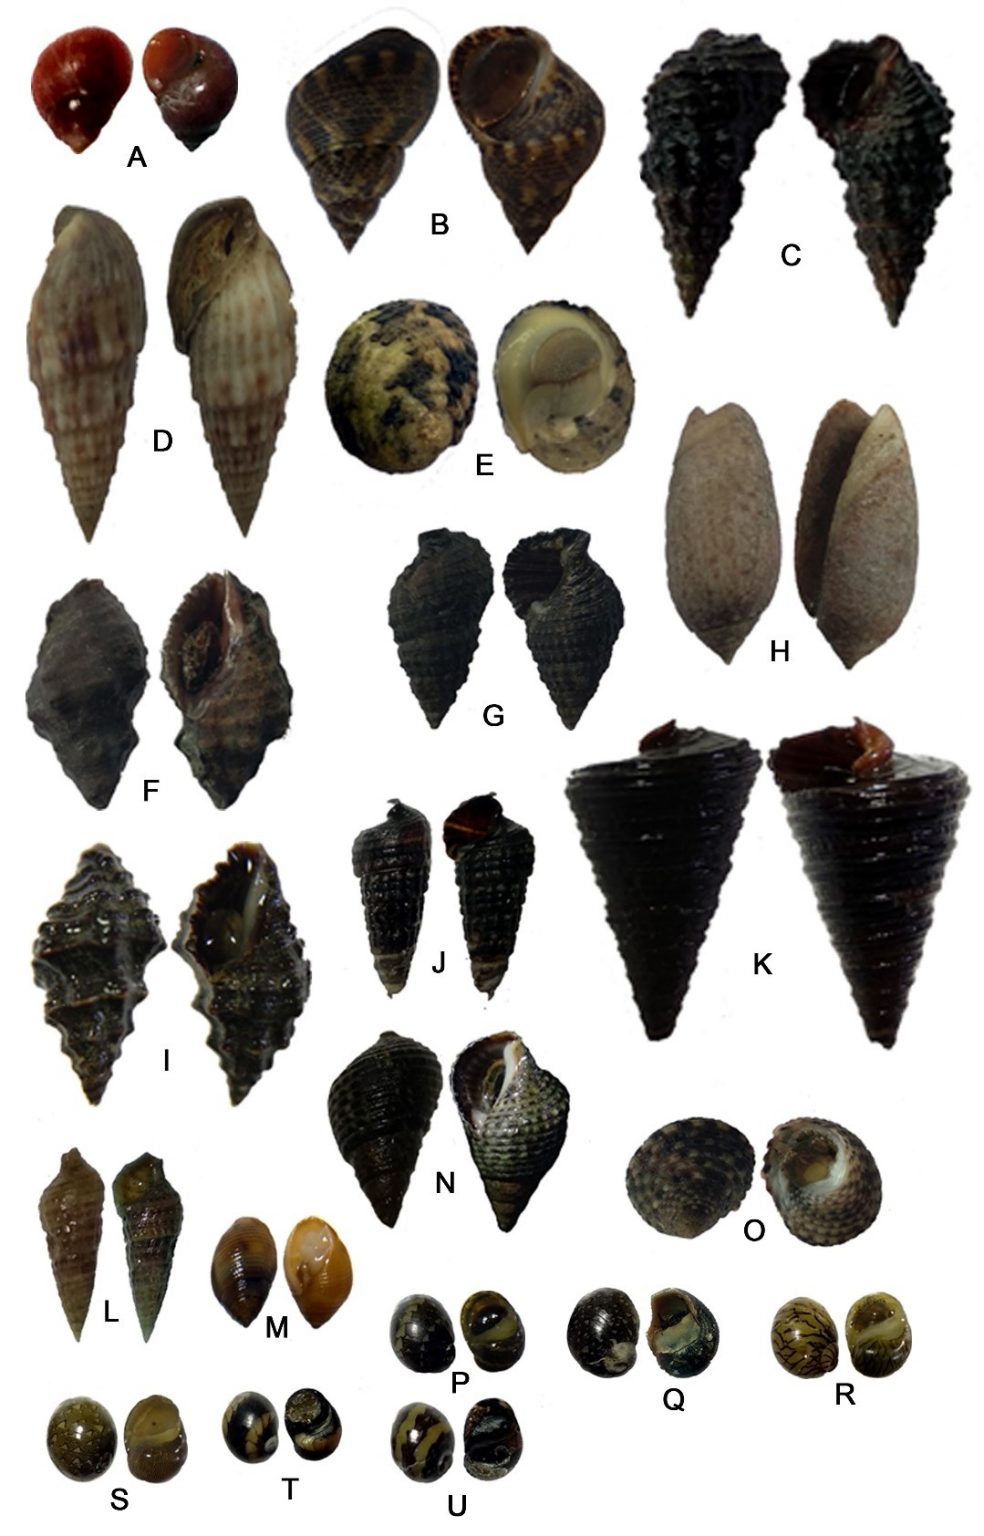 Pentingnya Jenis-Jenis Moluska (Gastropoda) pada Ekosistem Mangrove